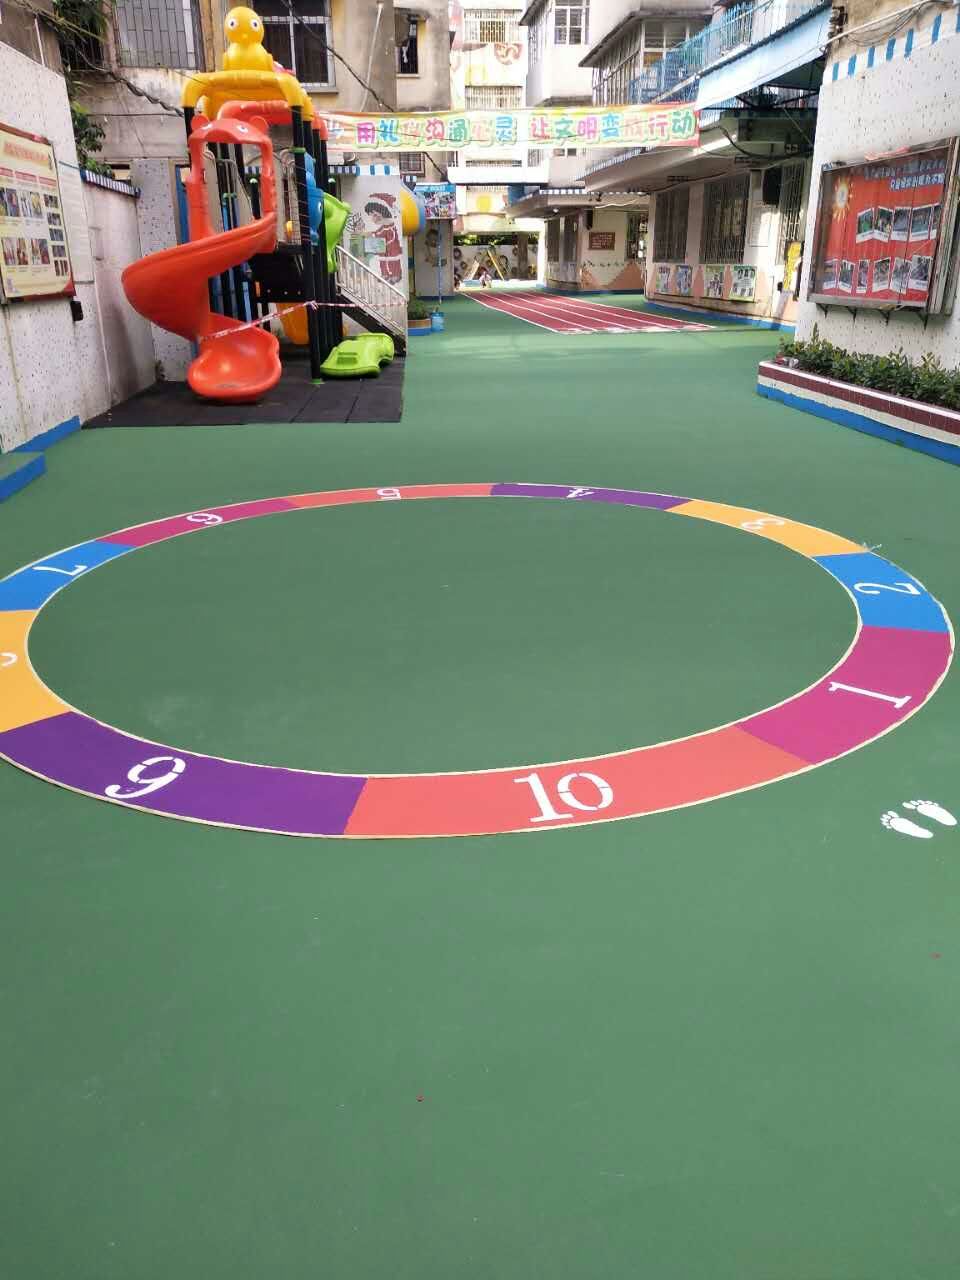 石岐区童乐幼儿园于暑期对室外操场游戏地面进行翻新施工,材料采用